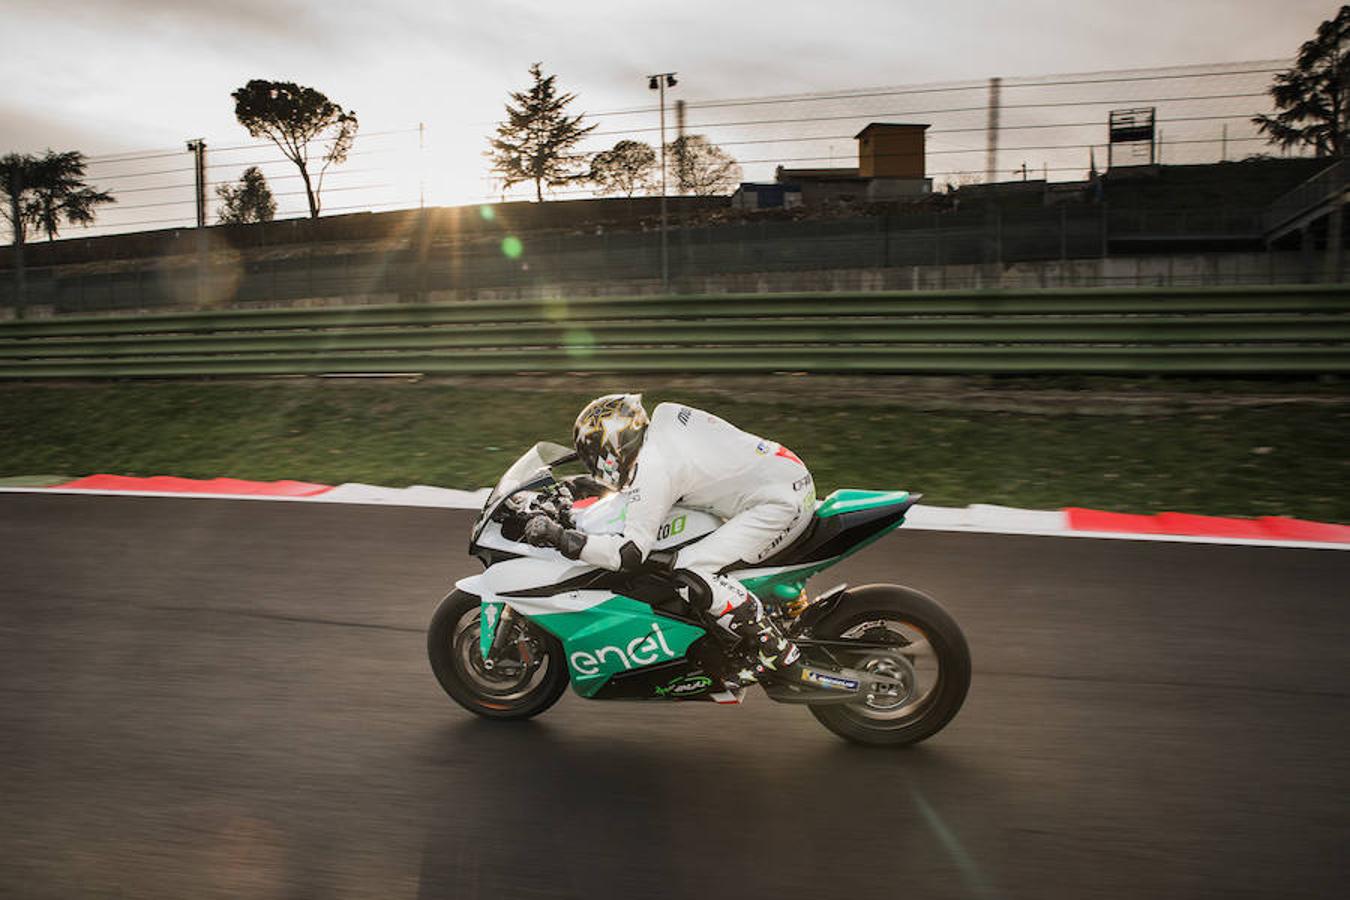 El acto celebrado en Roma para introducir el campeonato de motos eléctricas contó con la presencia del piloto italiano Loris Capirossi.